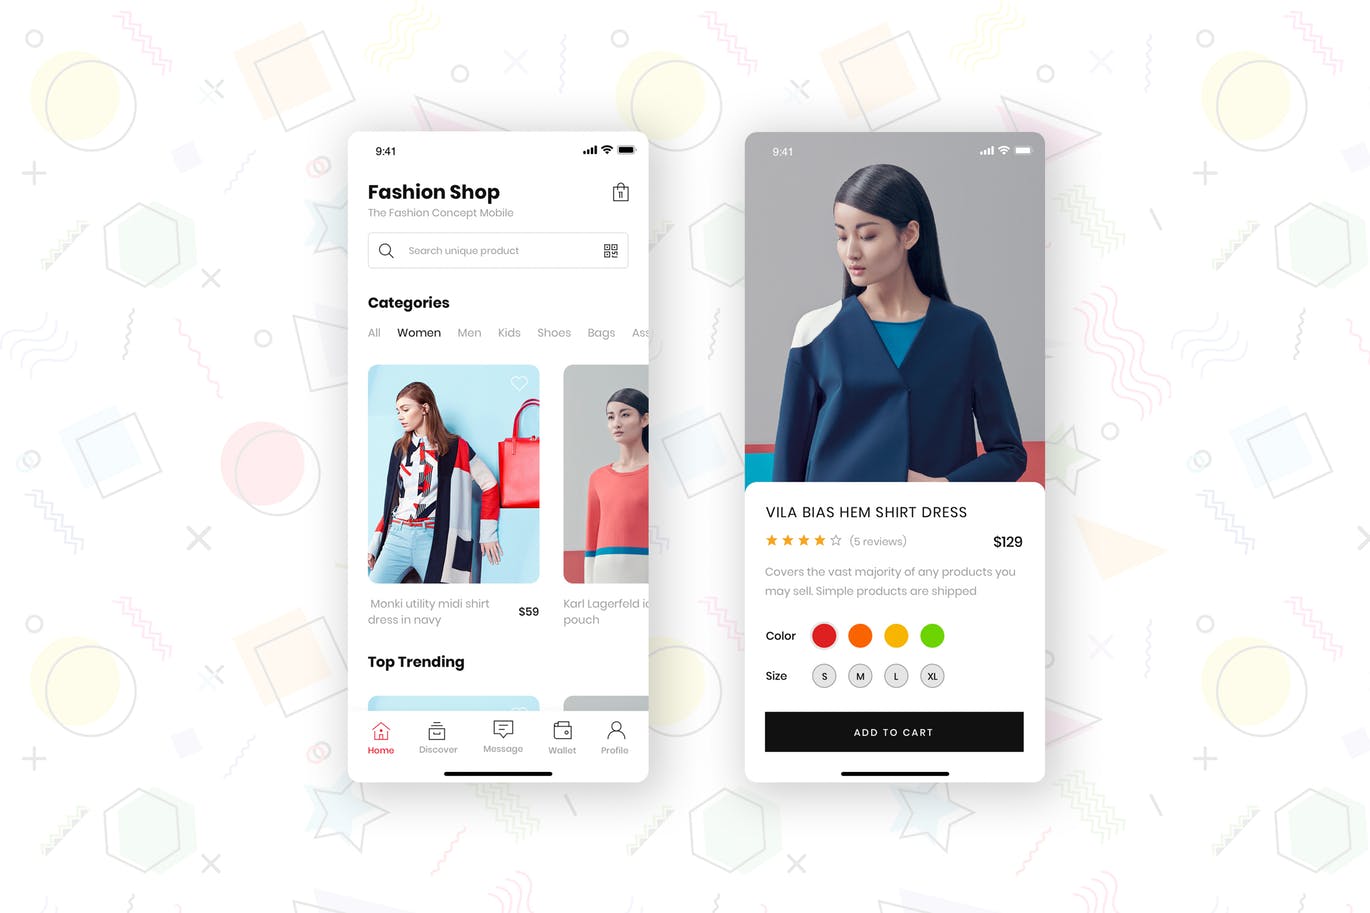 时尚服饰品牌网店APP应用UI设计第一素材精选套件 Fashion Store Mobile App UI Kit插图